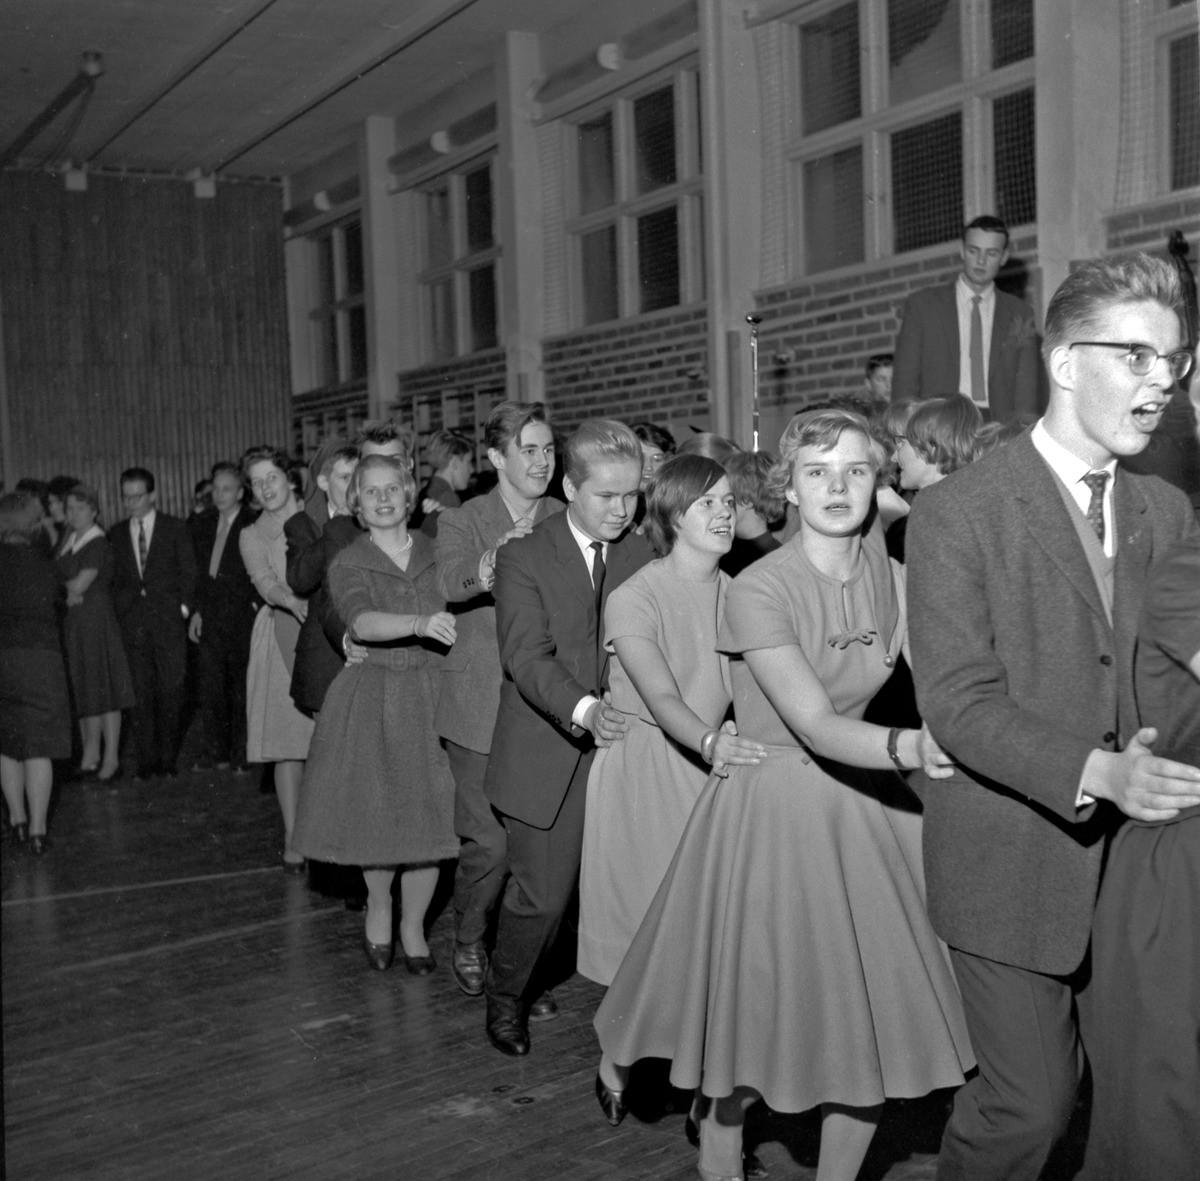 Munkkiniemen yhteiskoulussa tanssittiin letkajenkkaa vuonna 1957 tai 1958. Kuva Kari Hakli, Helsingin kaupunginmuseo